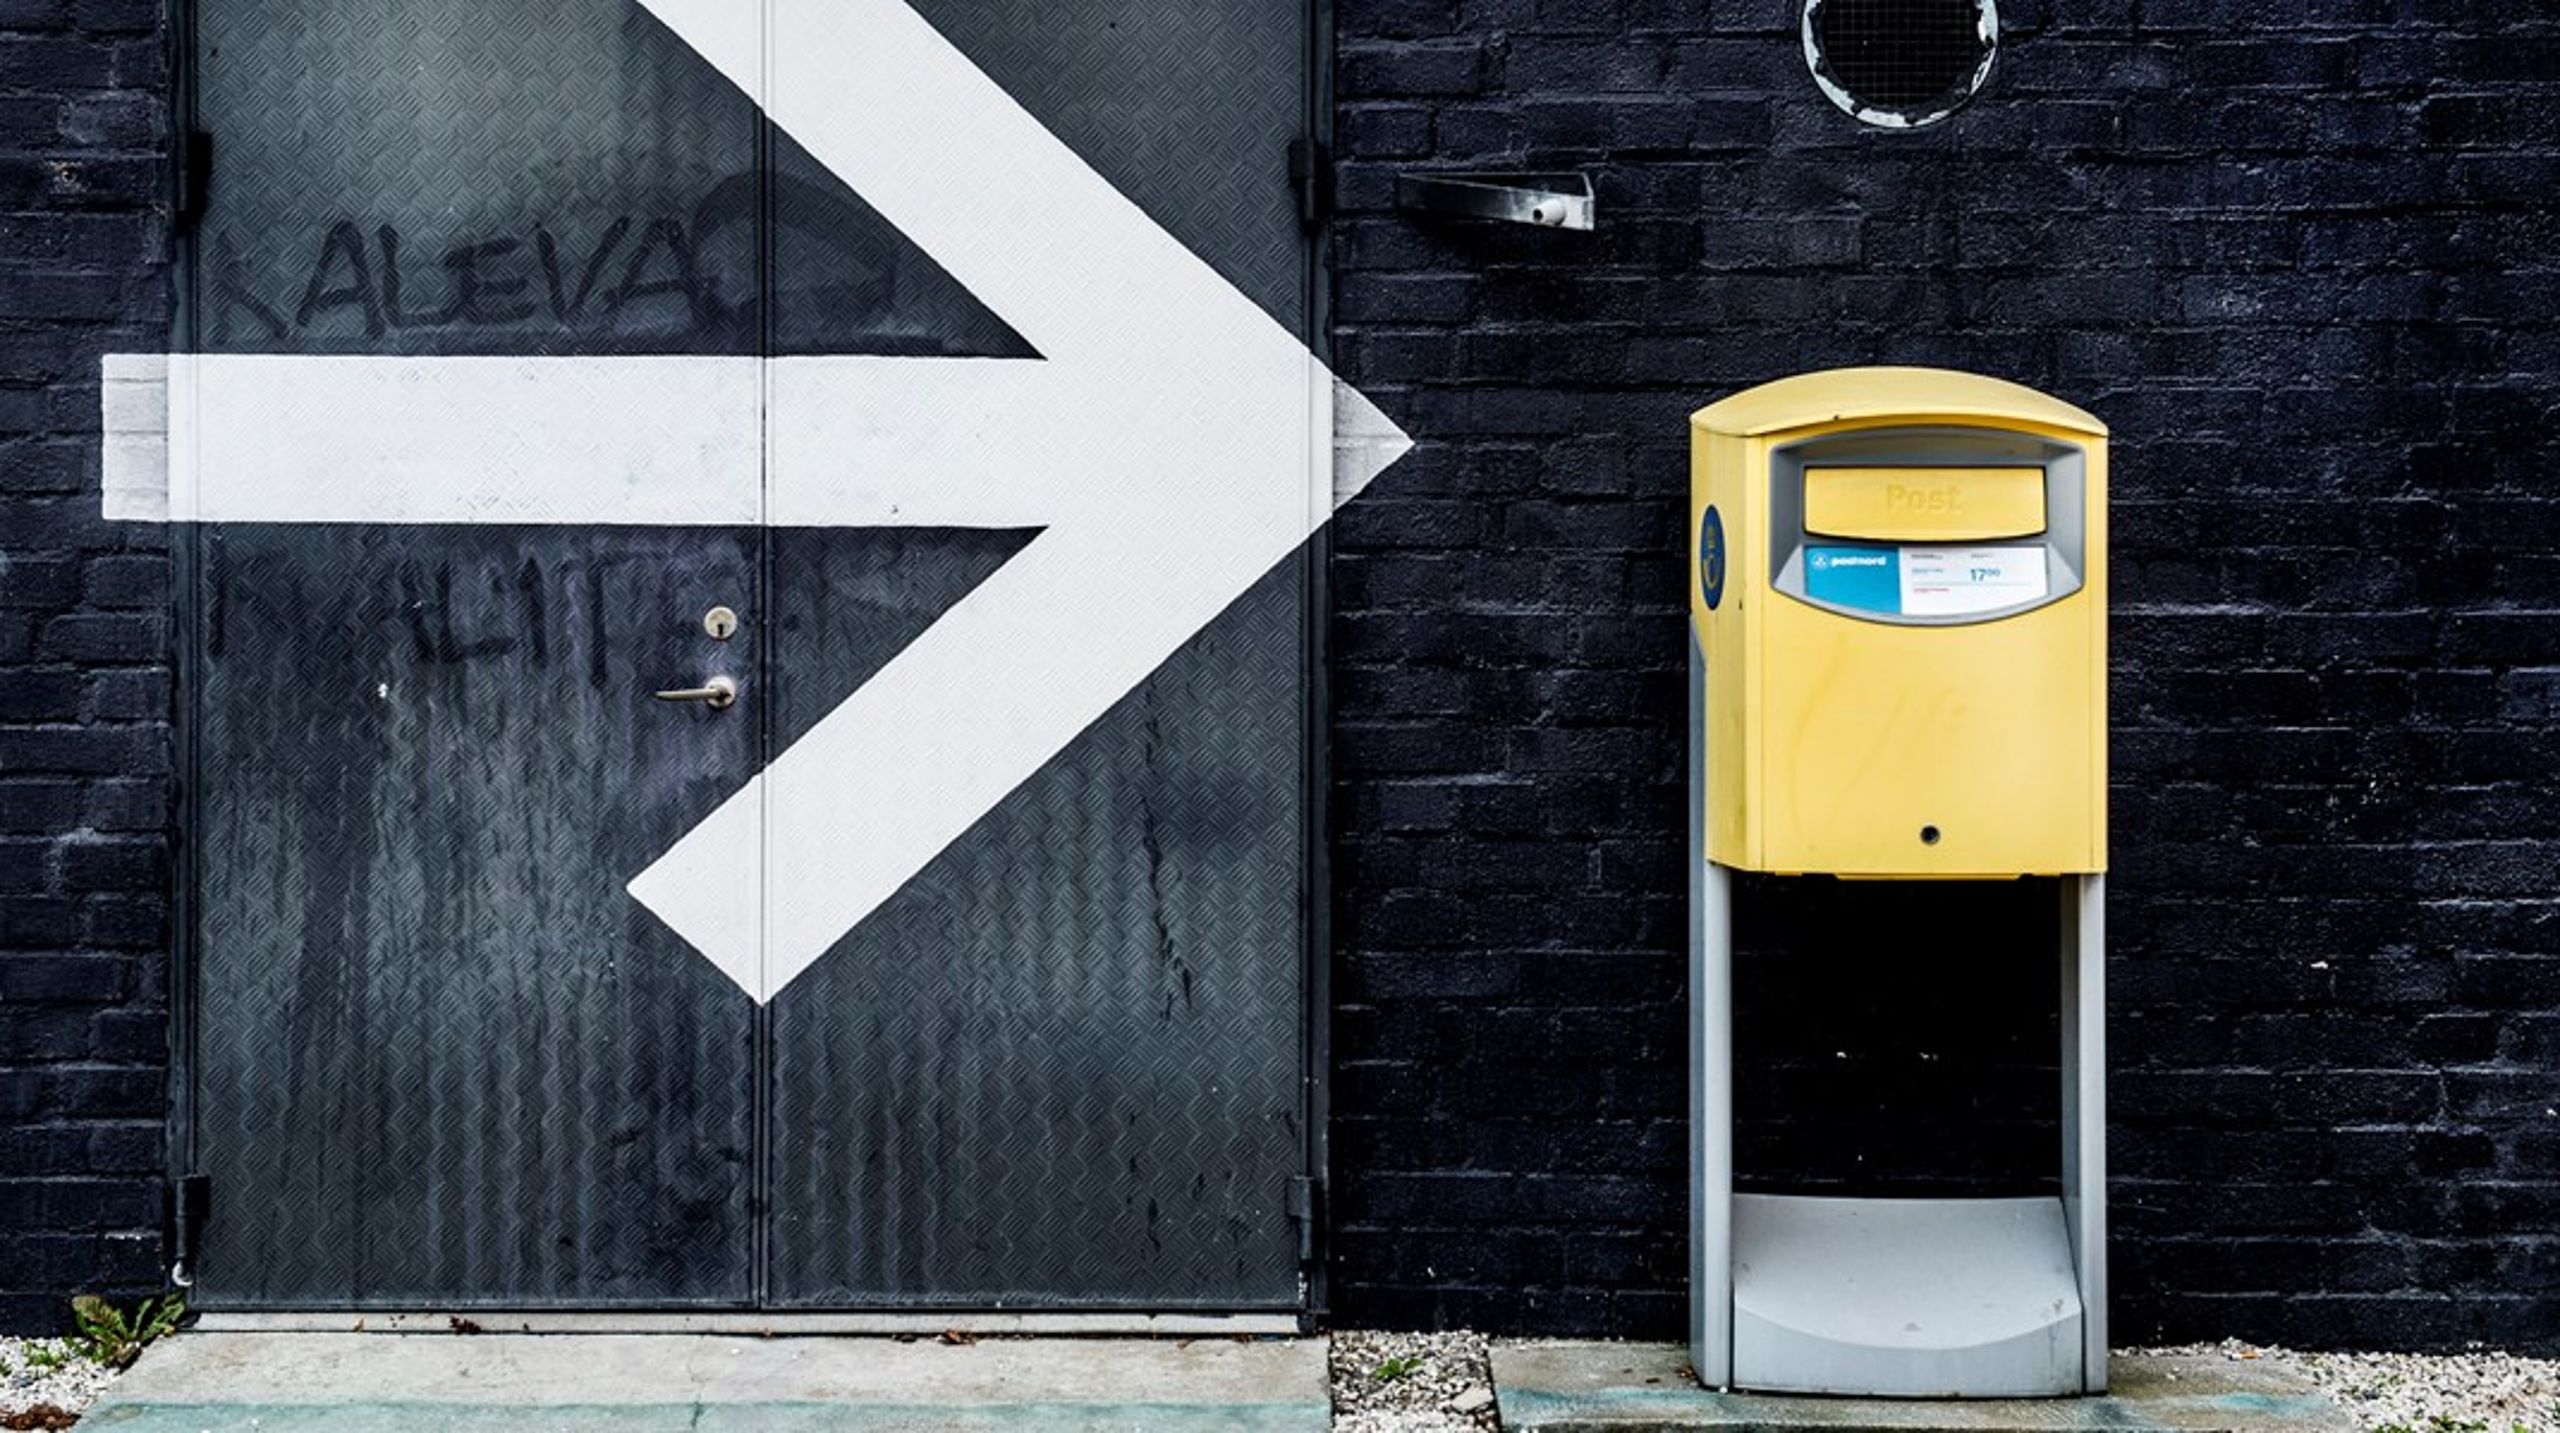 ”Konkurrensverket konstaterar att frågan om tillträdesreglering till Postnords infrastruktur ännu inte har utretts ordentligt i Sverige”, skriver debattörerna.